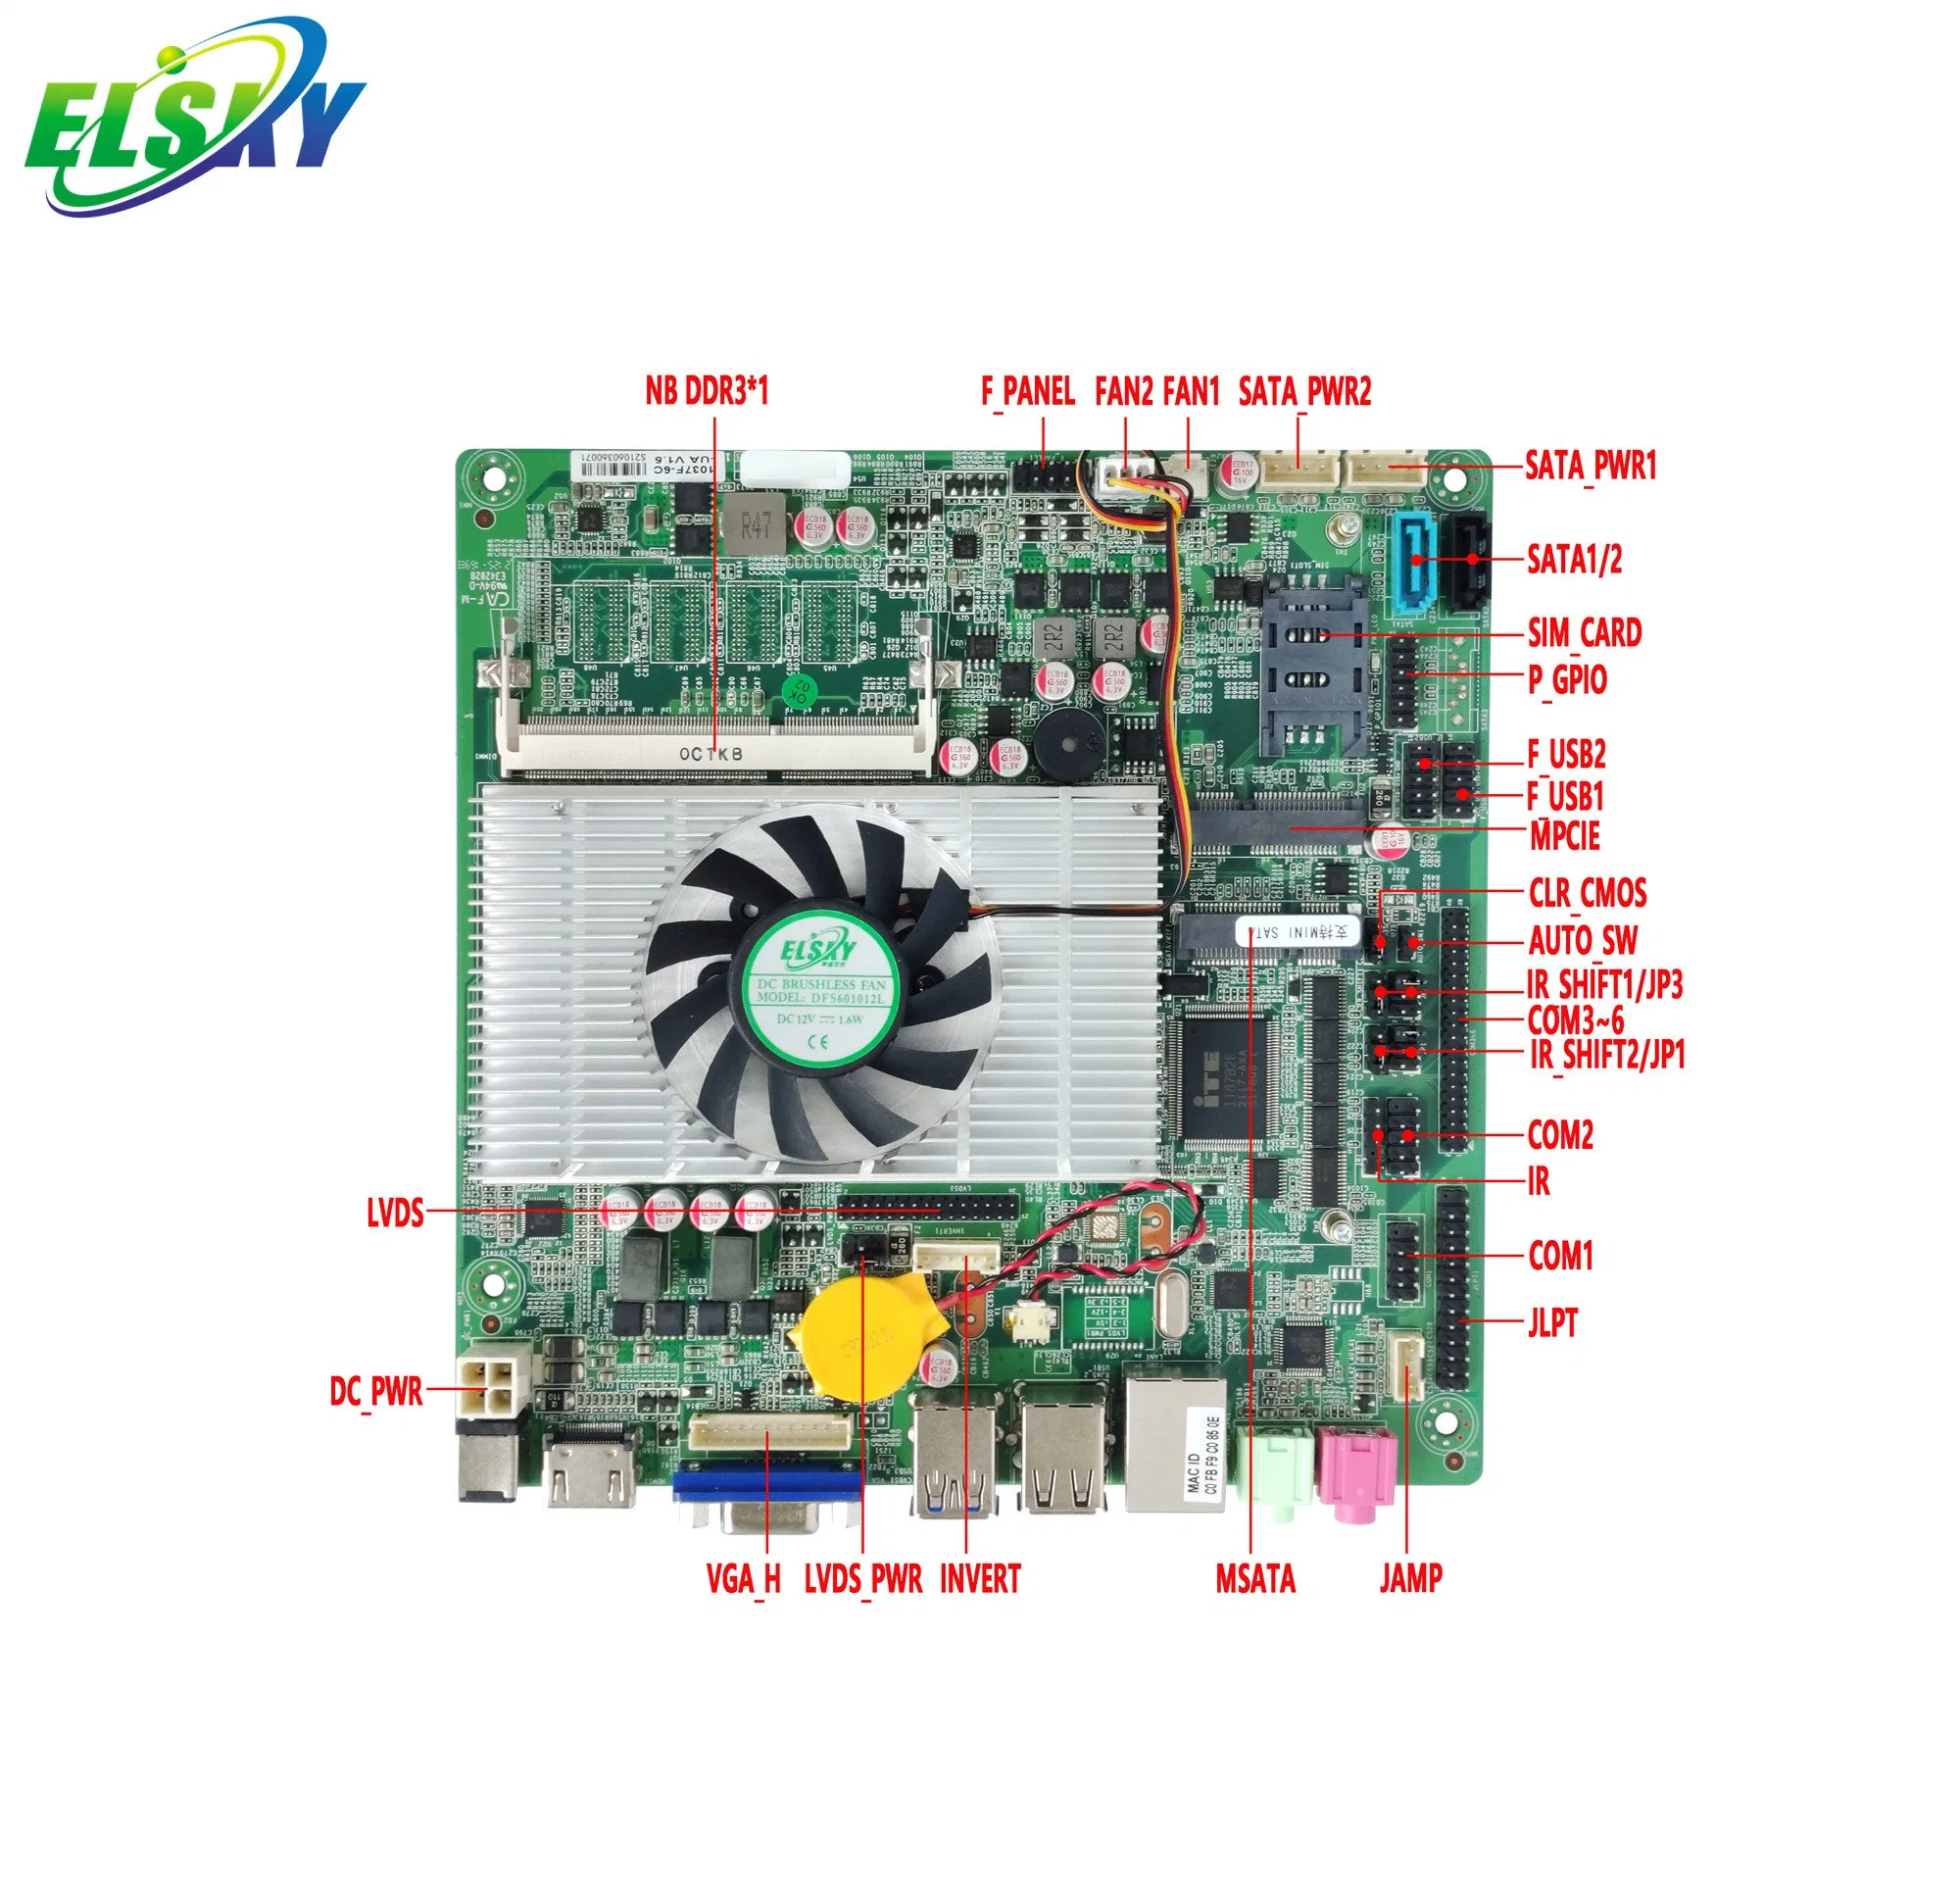 Placa base Elsky Mini ITX 1037f Dual Cores DDR3 placa 1,8GHz 2117u DC 12V SATA2,0 mSATA LVDS 2*RS232 COM para uso industrial